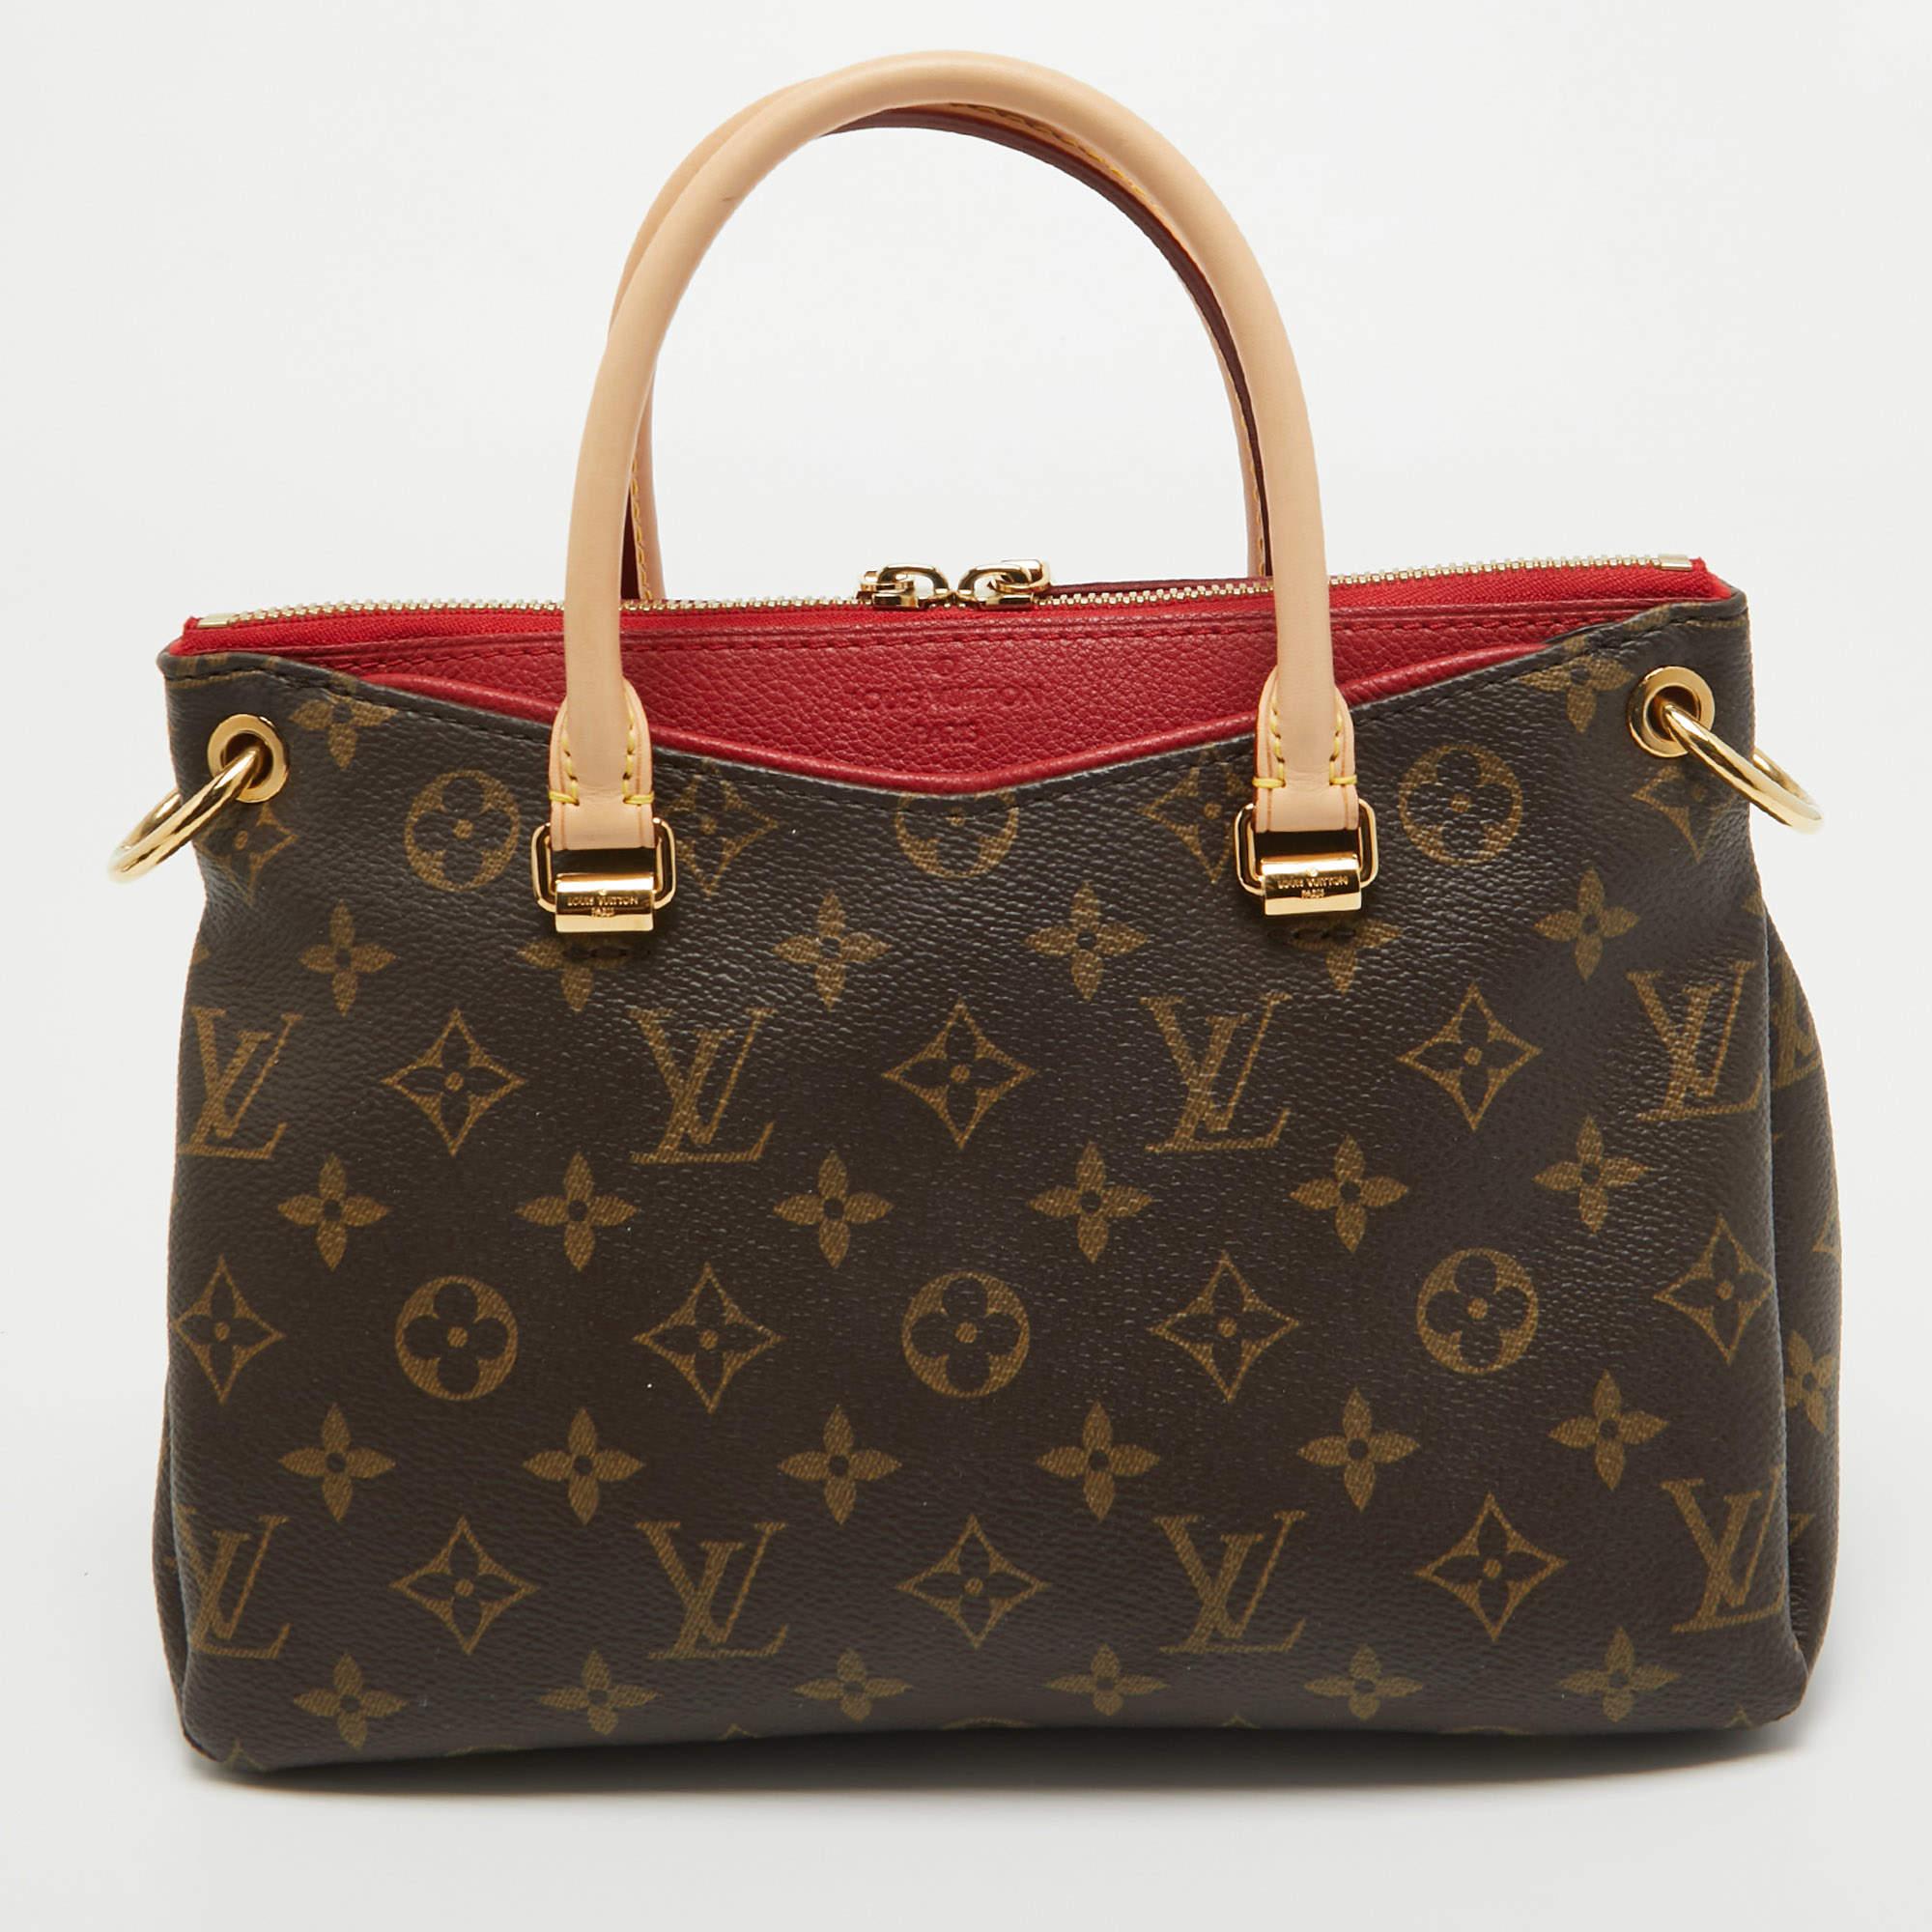 Mit dieser trendigen und funktionellen Tasche von Louis Vuitton können Sie sich wie ein Profi ausstatten. Diese reichhaltige und edle Pallas Tasche ist aus Monogram Canvas in einer eleganten Silhouette gefertigt. Das Innere der Tasche ist mit